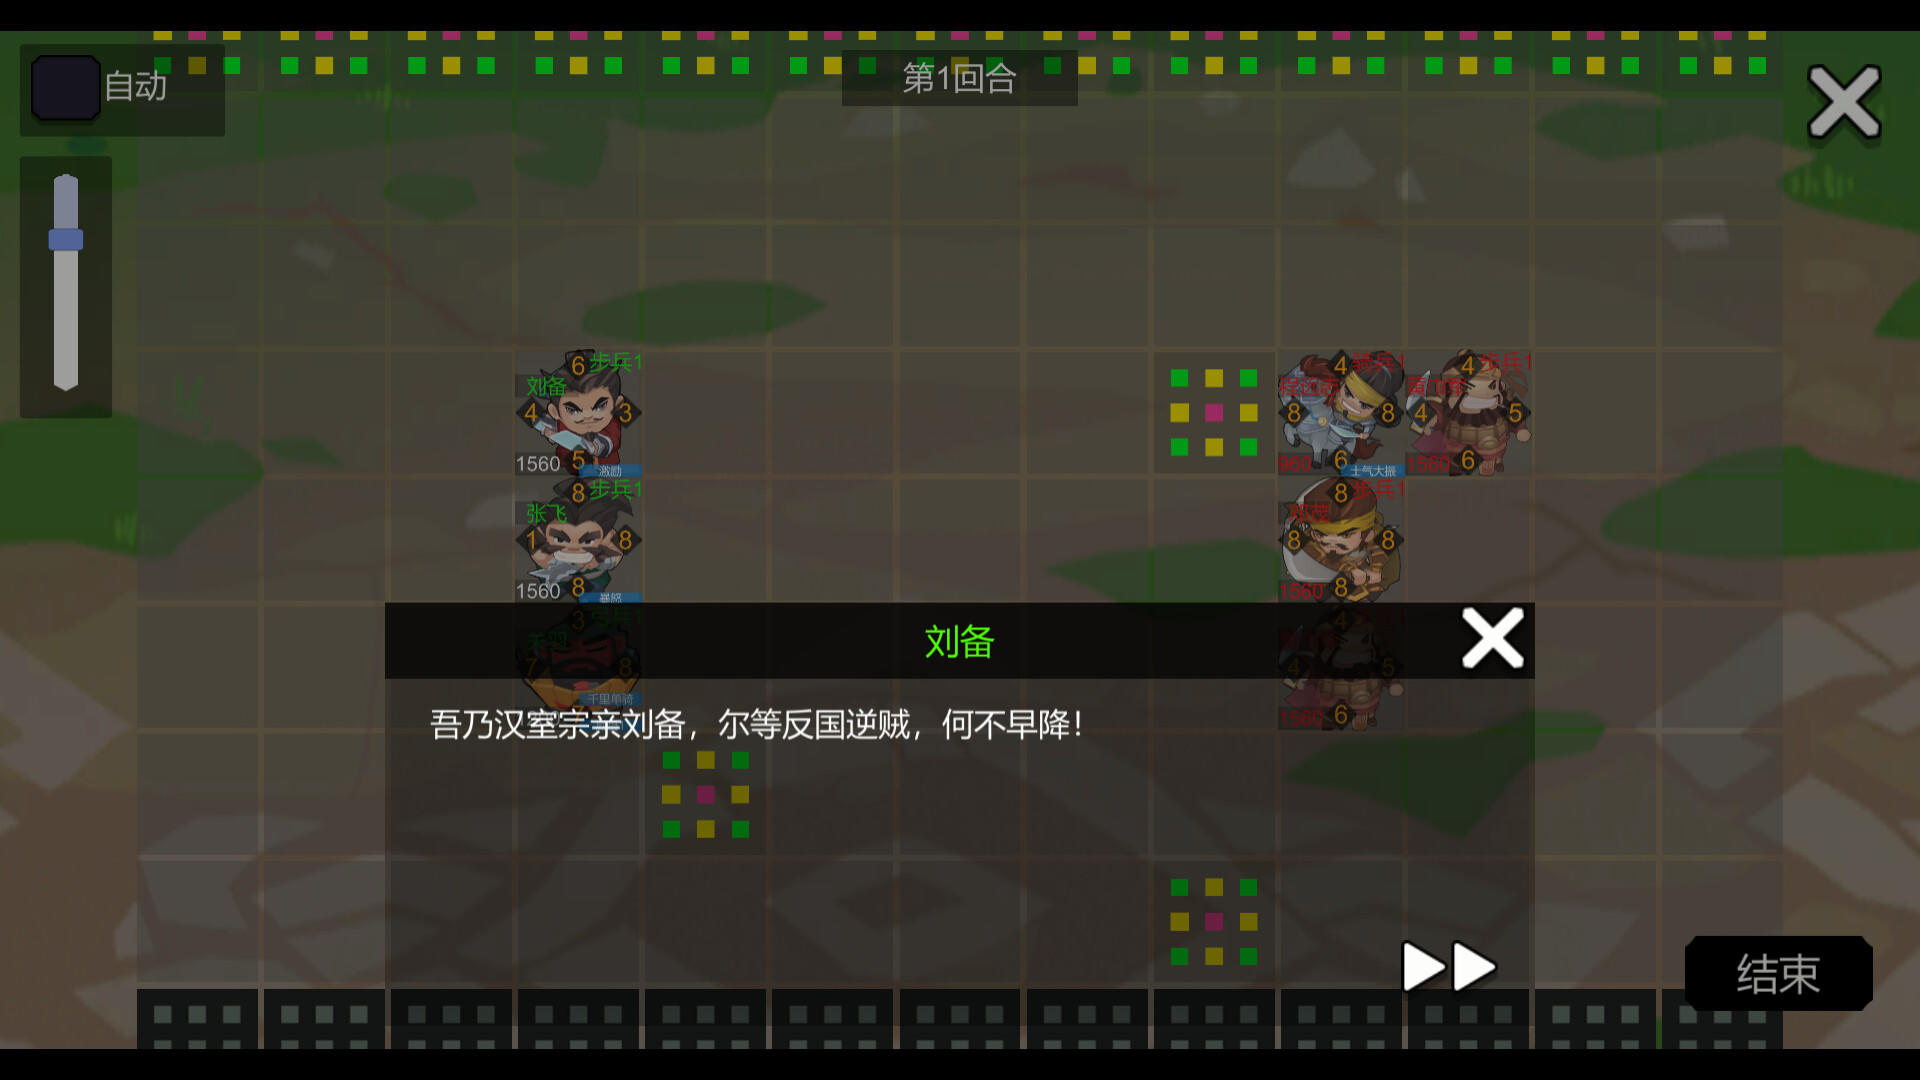 Screenshot 1 of មនោសញ្ចេតនាខ្មៅនៃនគរទាំងបី Ⅱ 0.1.1